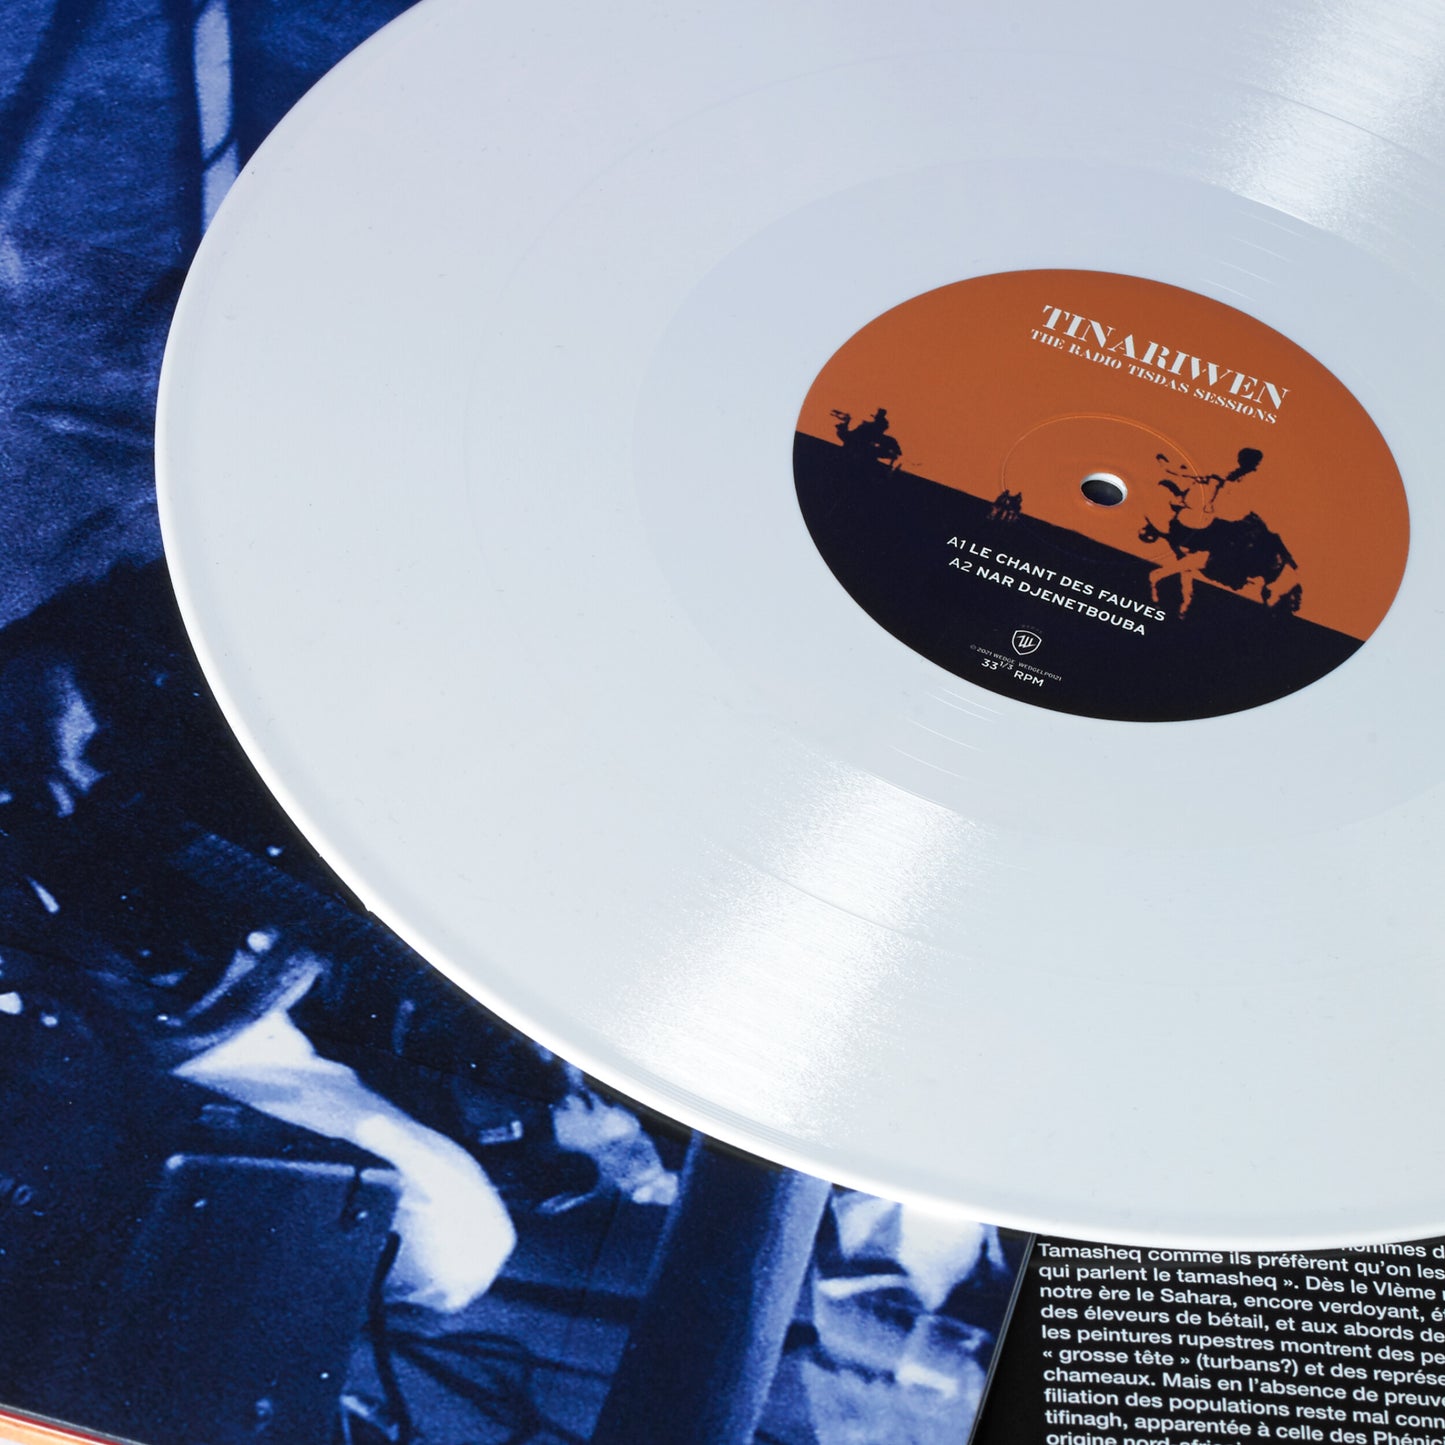 Tinariwen - The Radio Tisdas (white vinyl) - 2LP